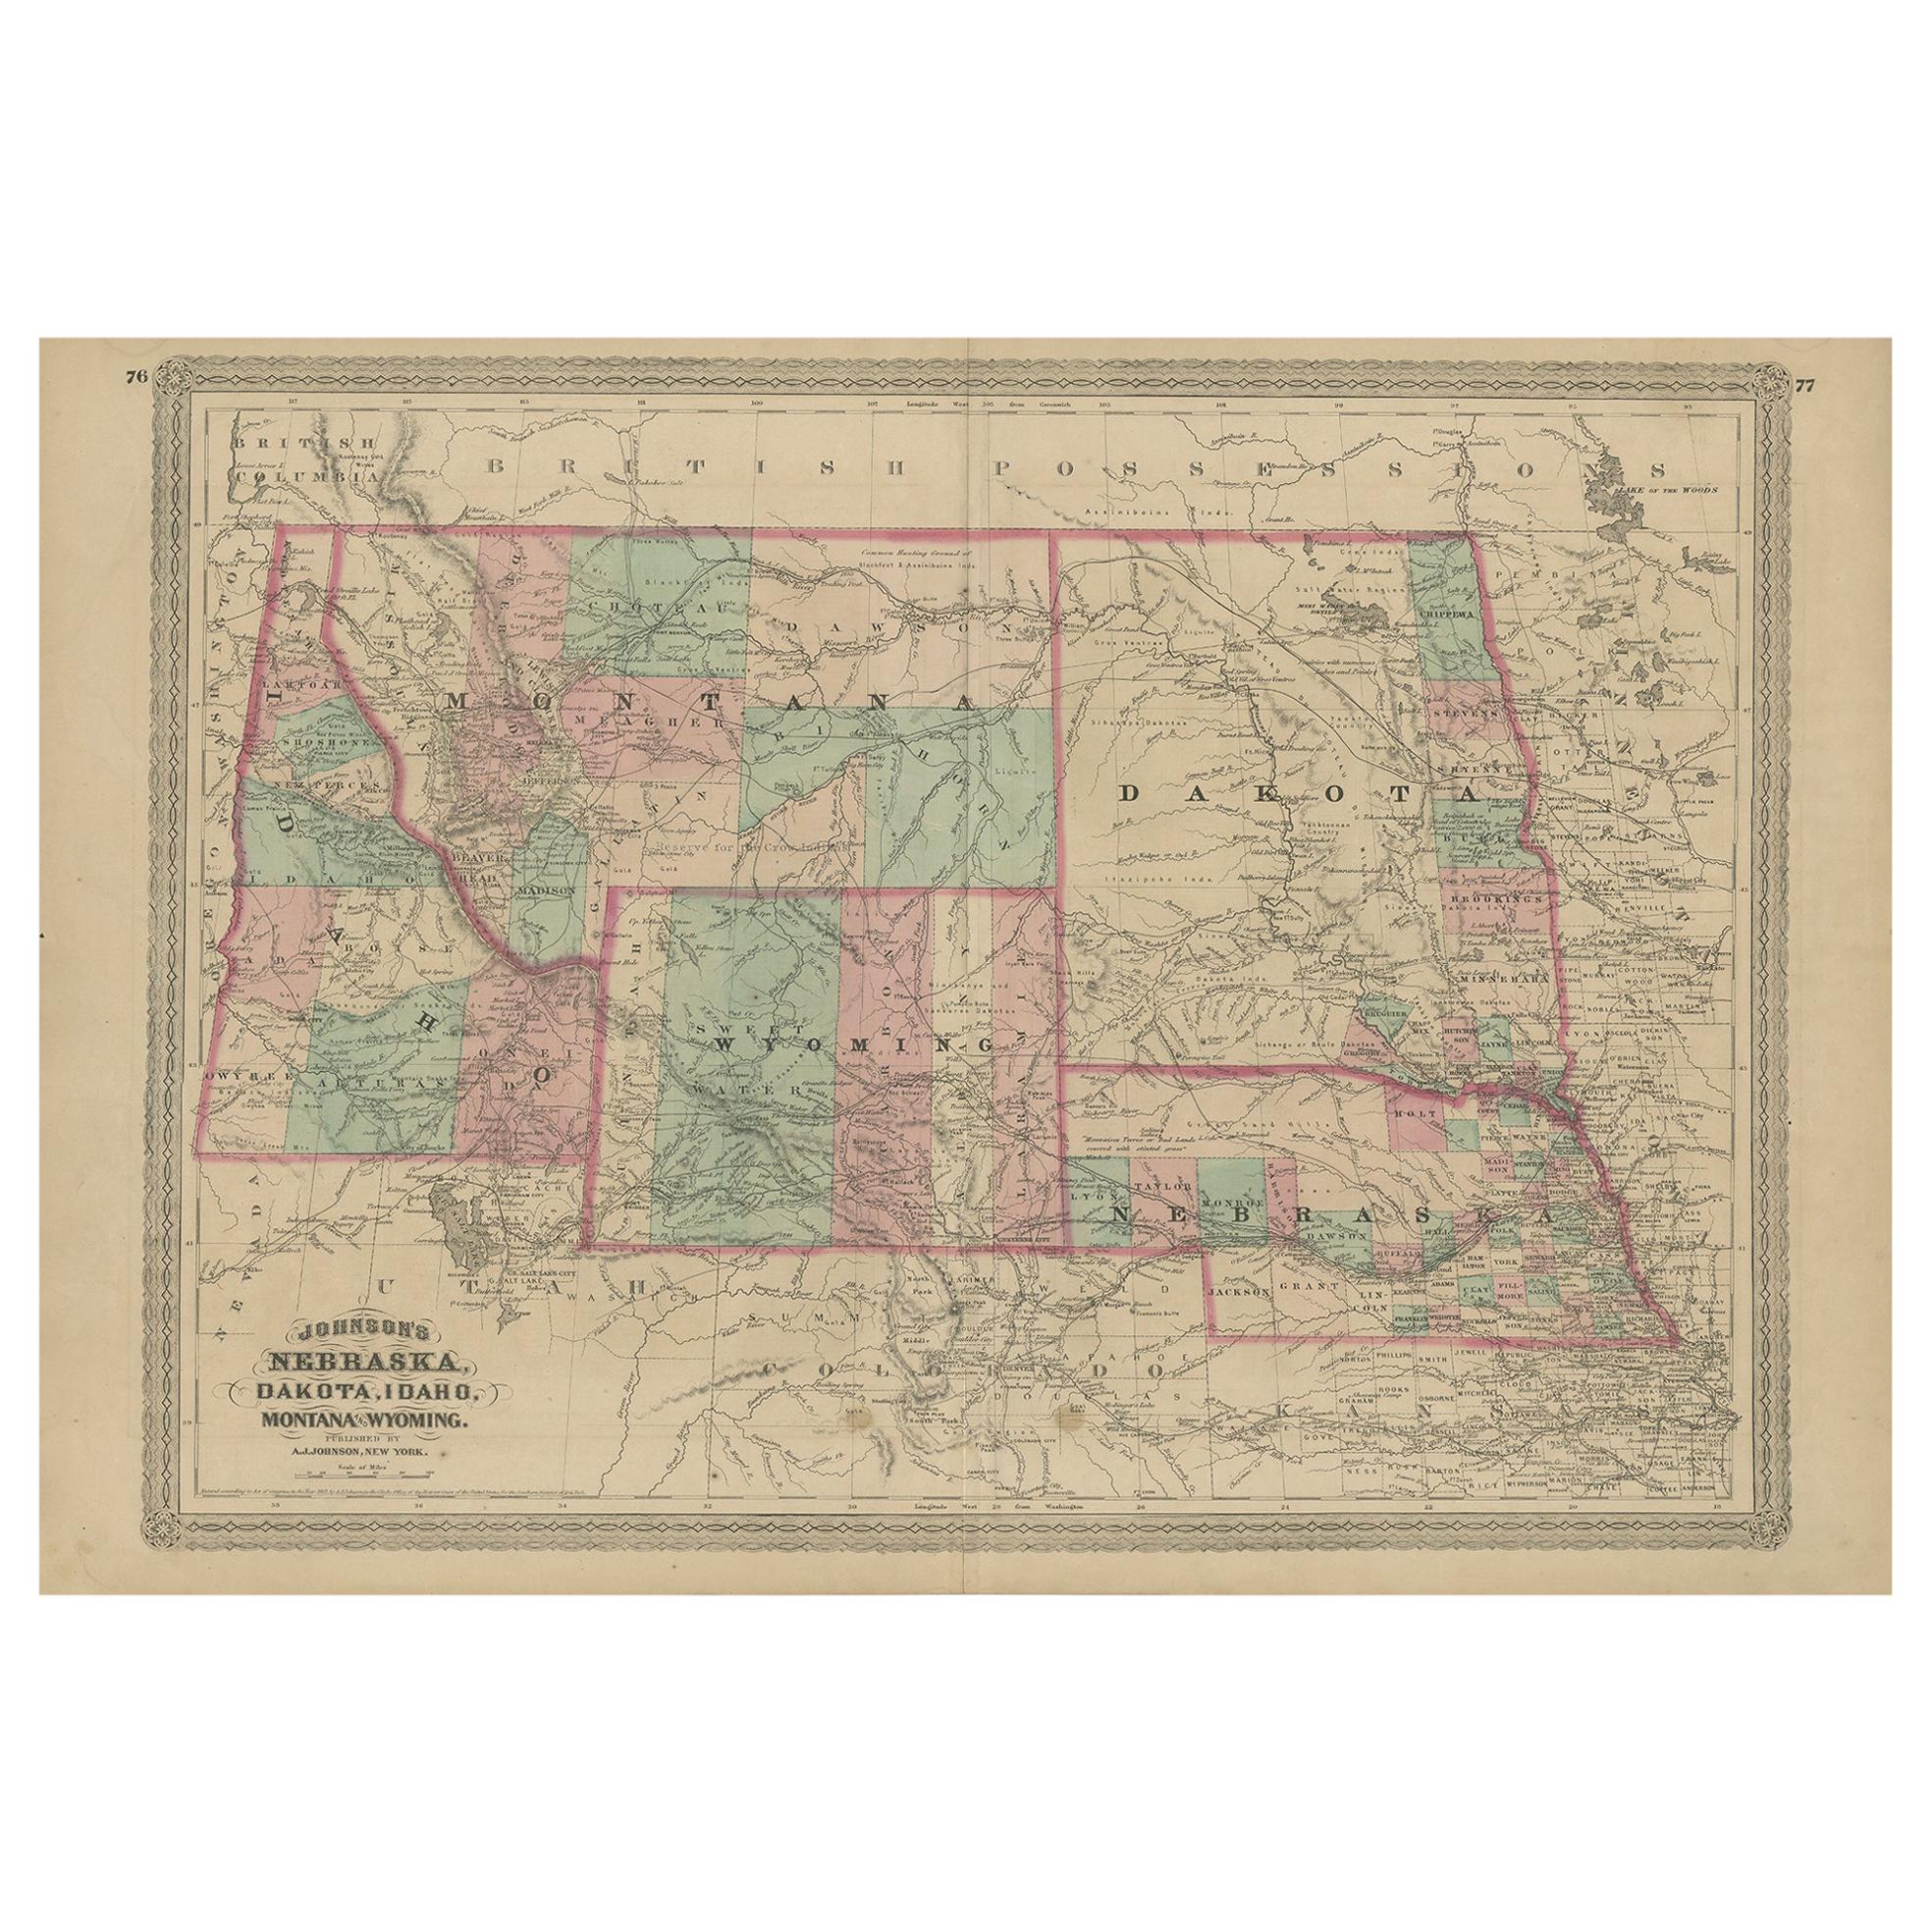 Antique Map of Nebraska, Dakota, Idaho, Montana and Wyoming by Johnson '1872'